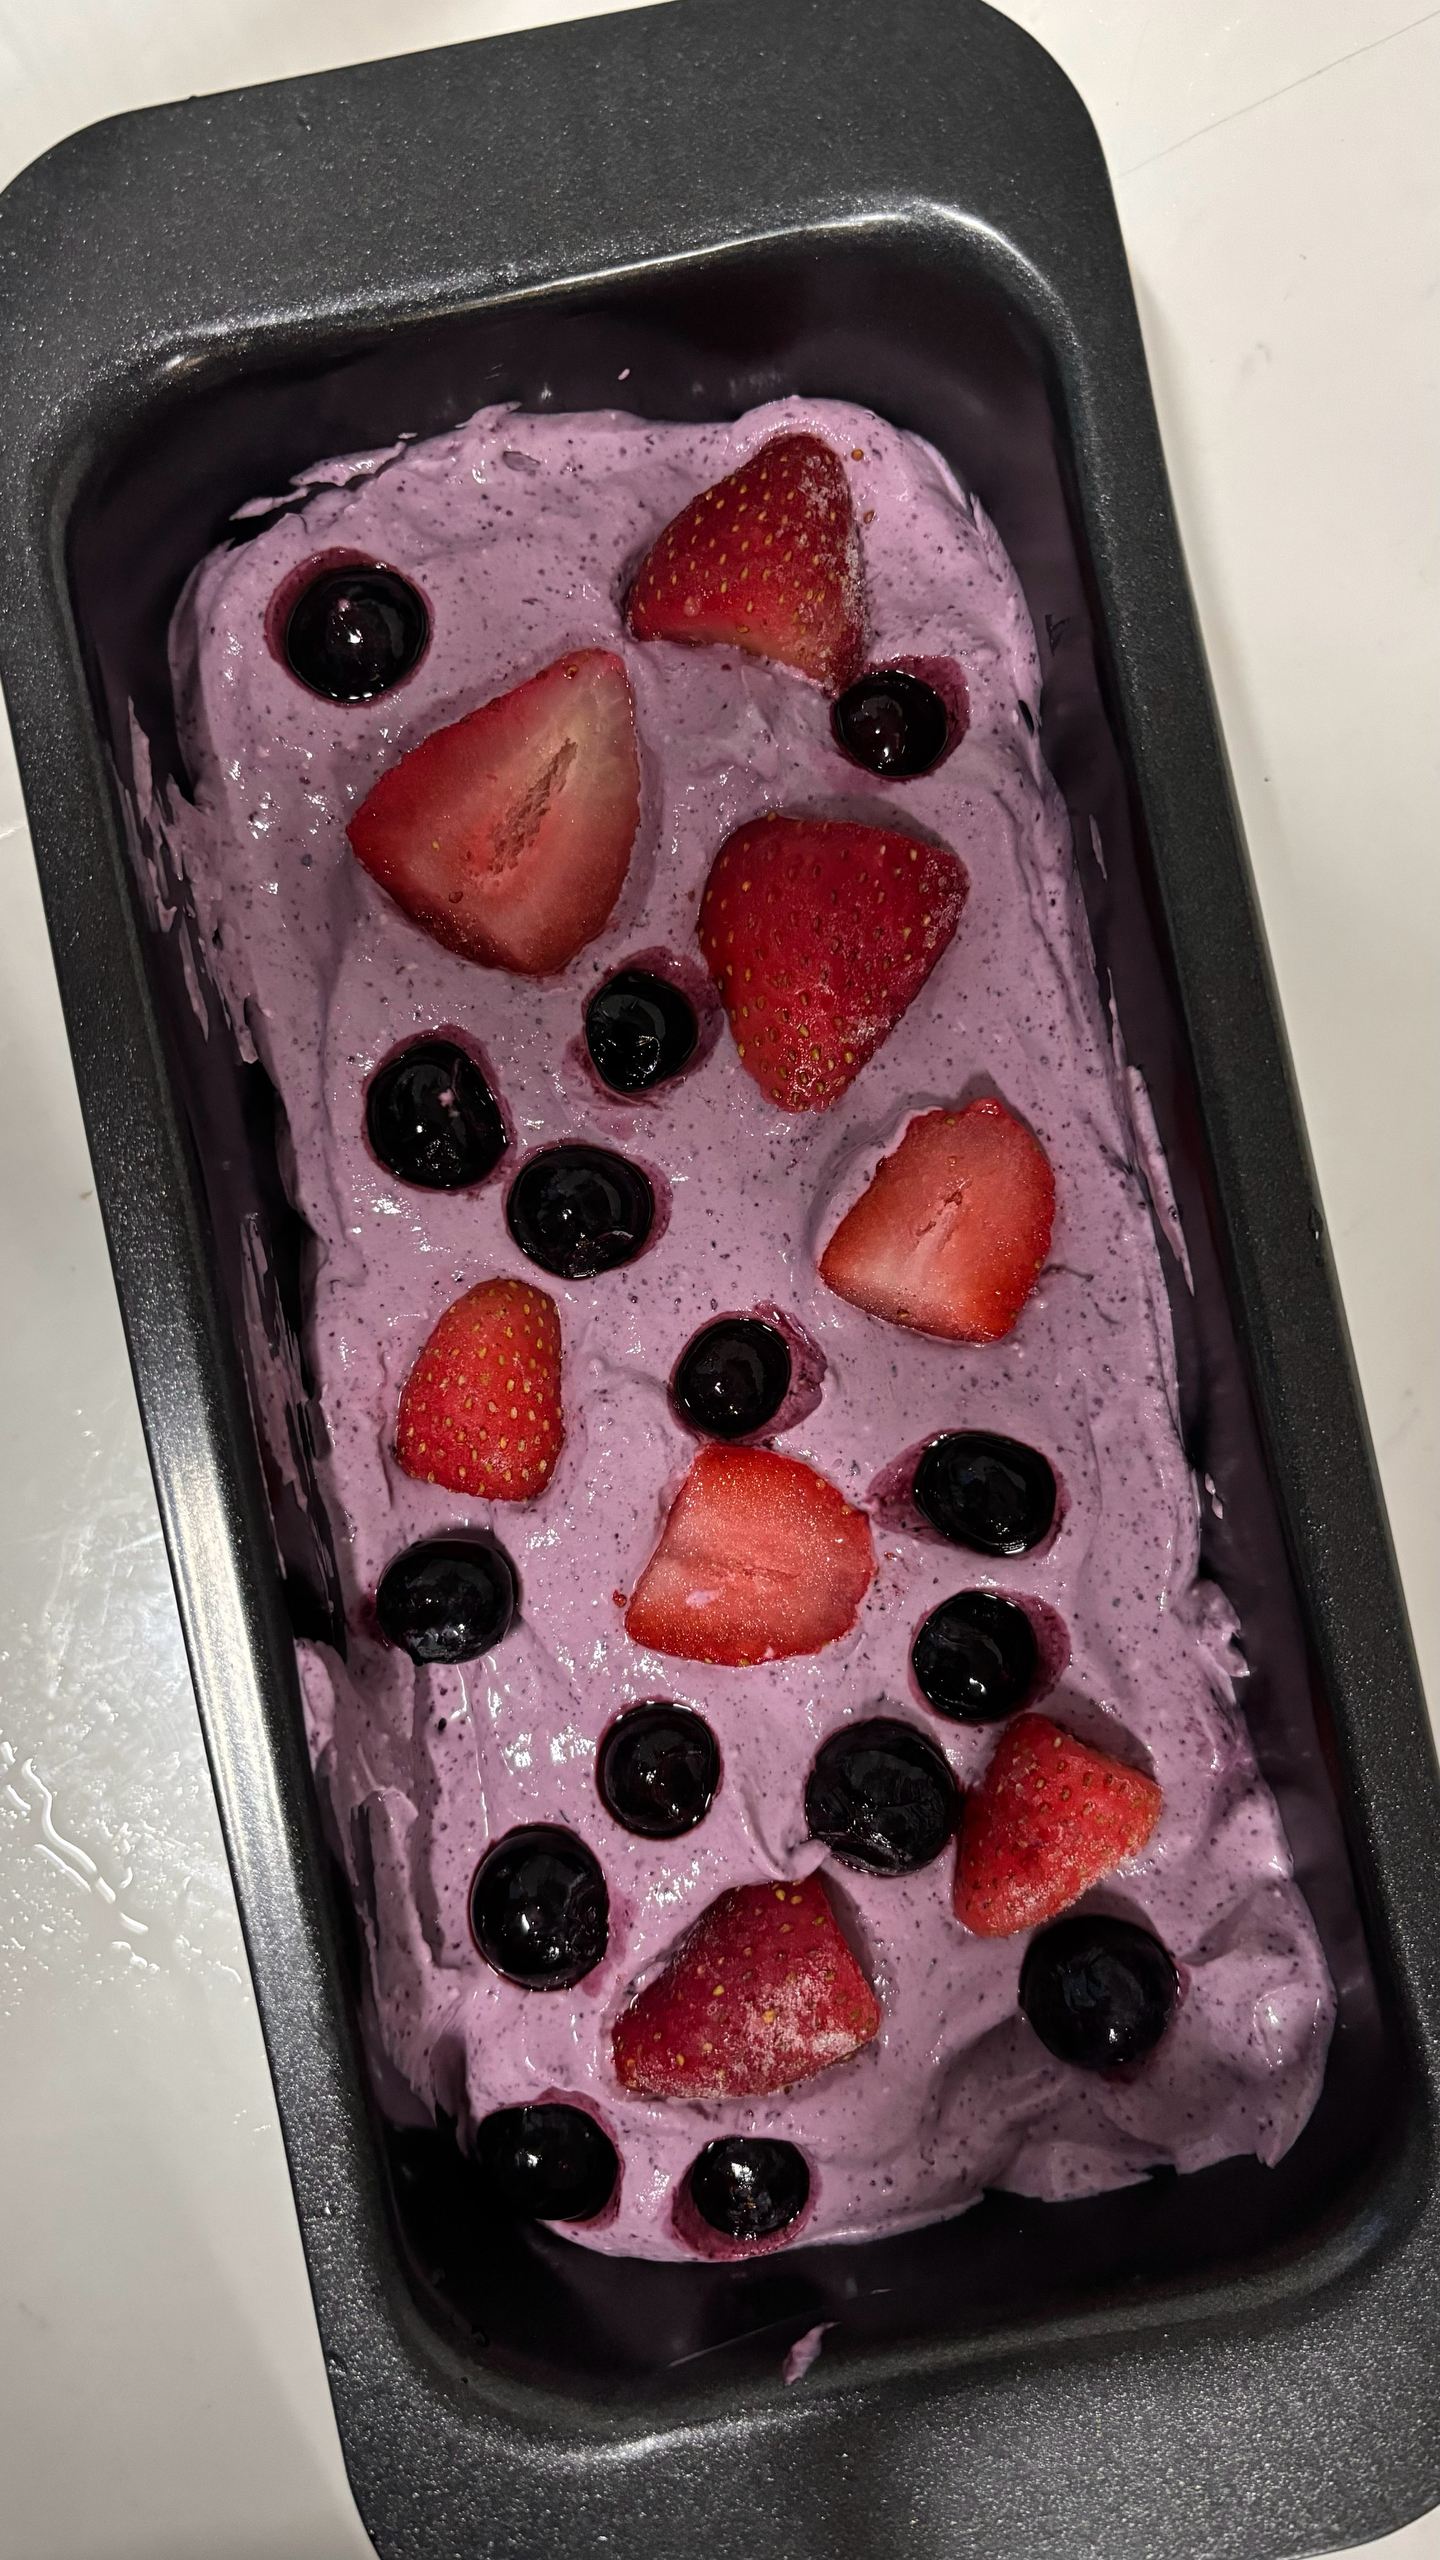 冻草莓芝士蛋糕（Berry Berry冰激凌）